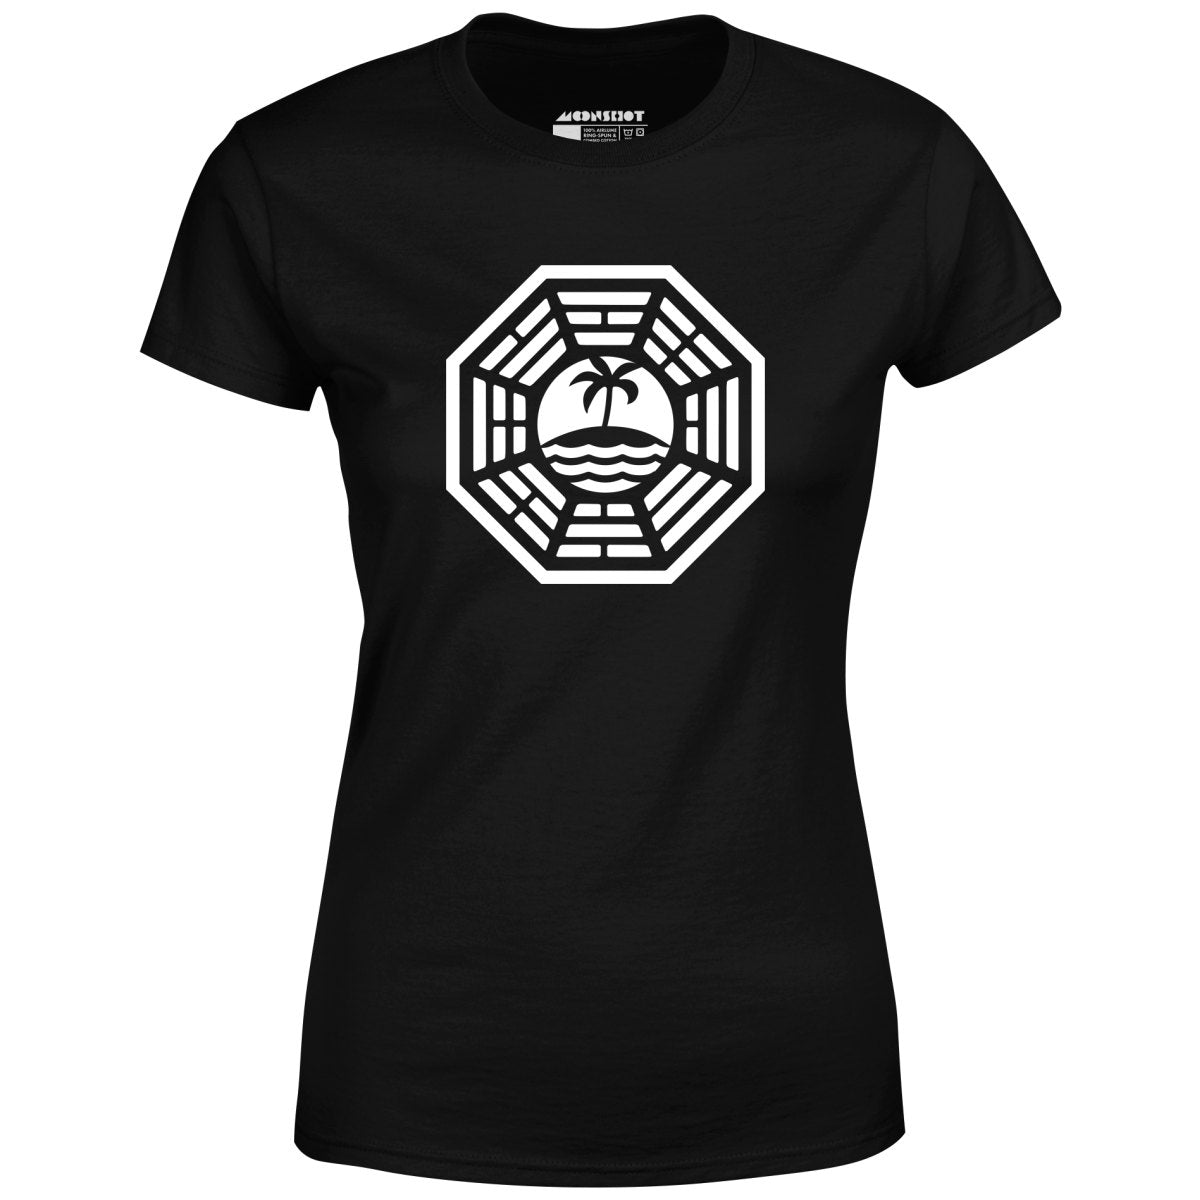 The Dharma Initiative - Women's T-Shirt